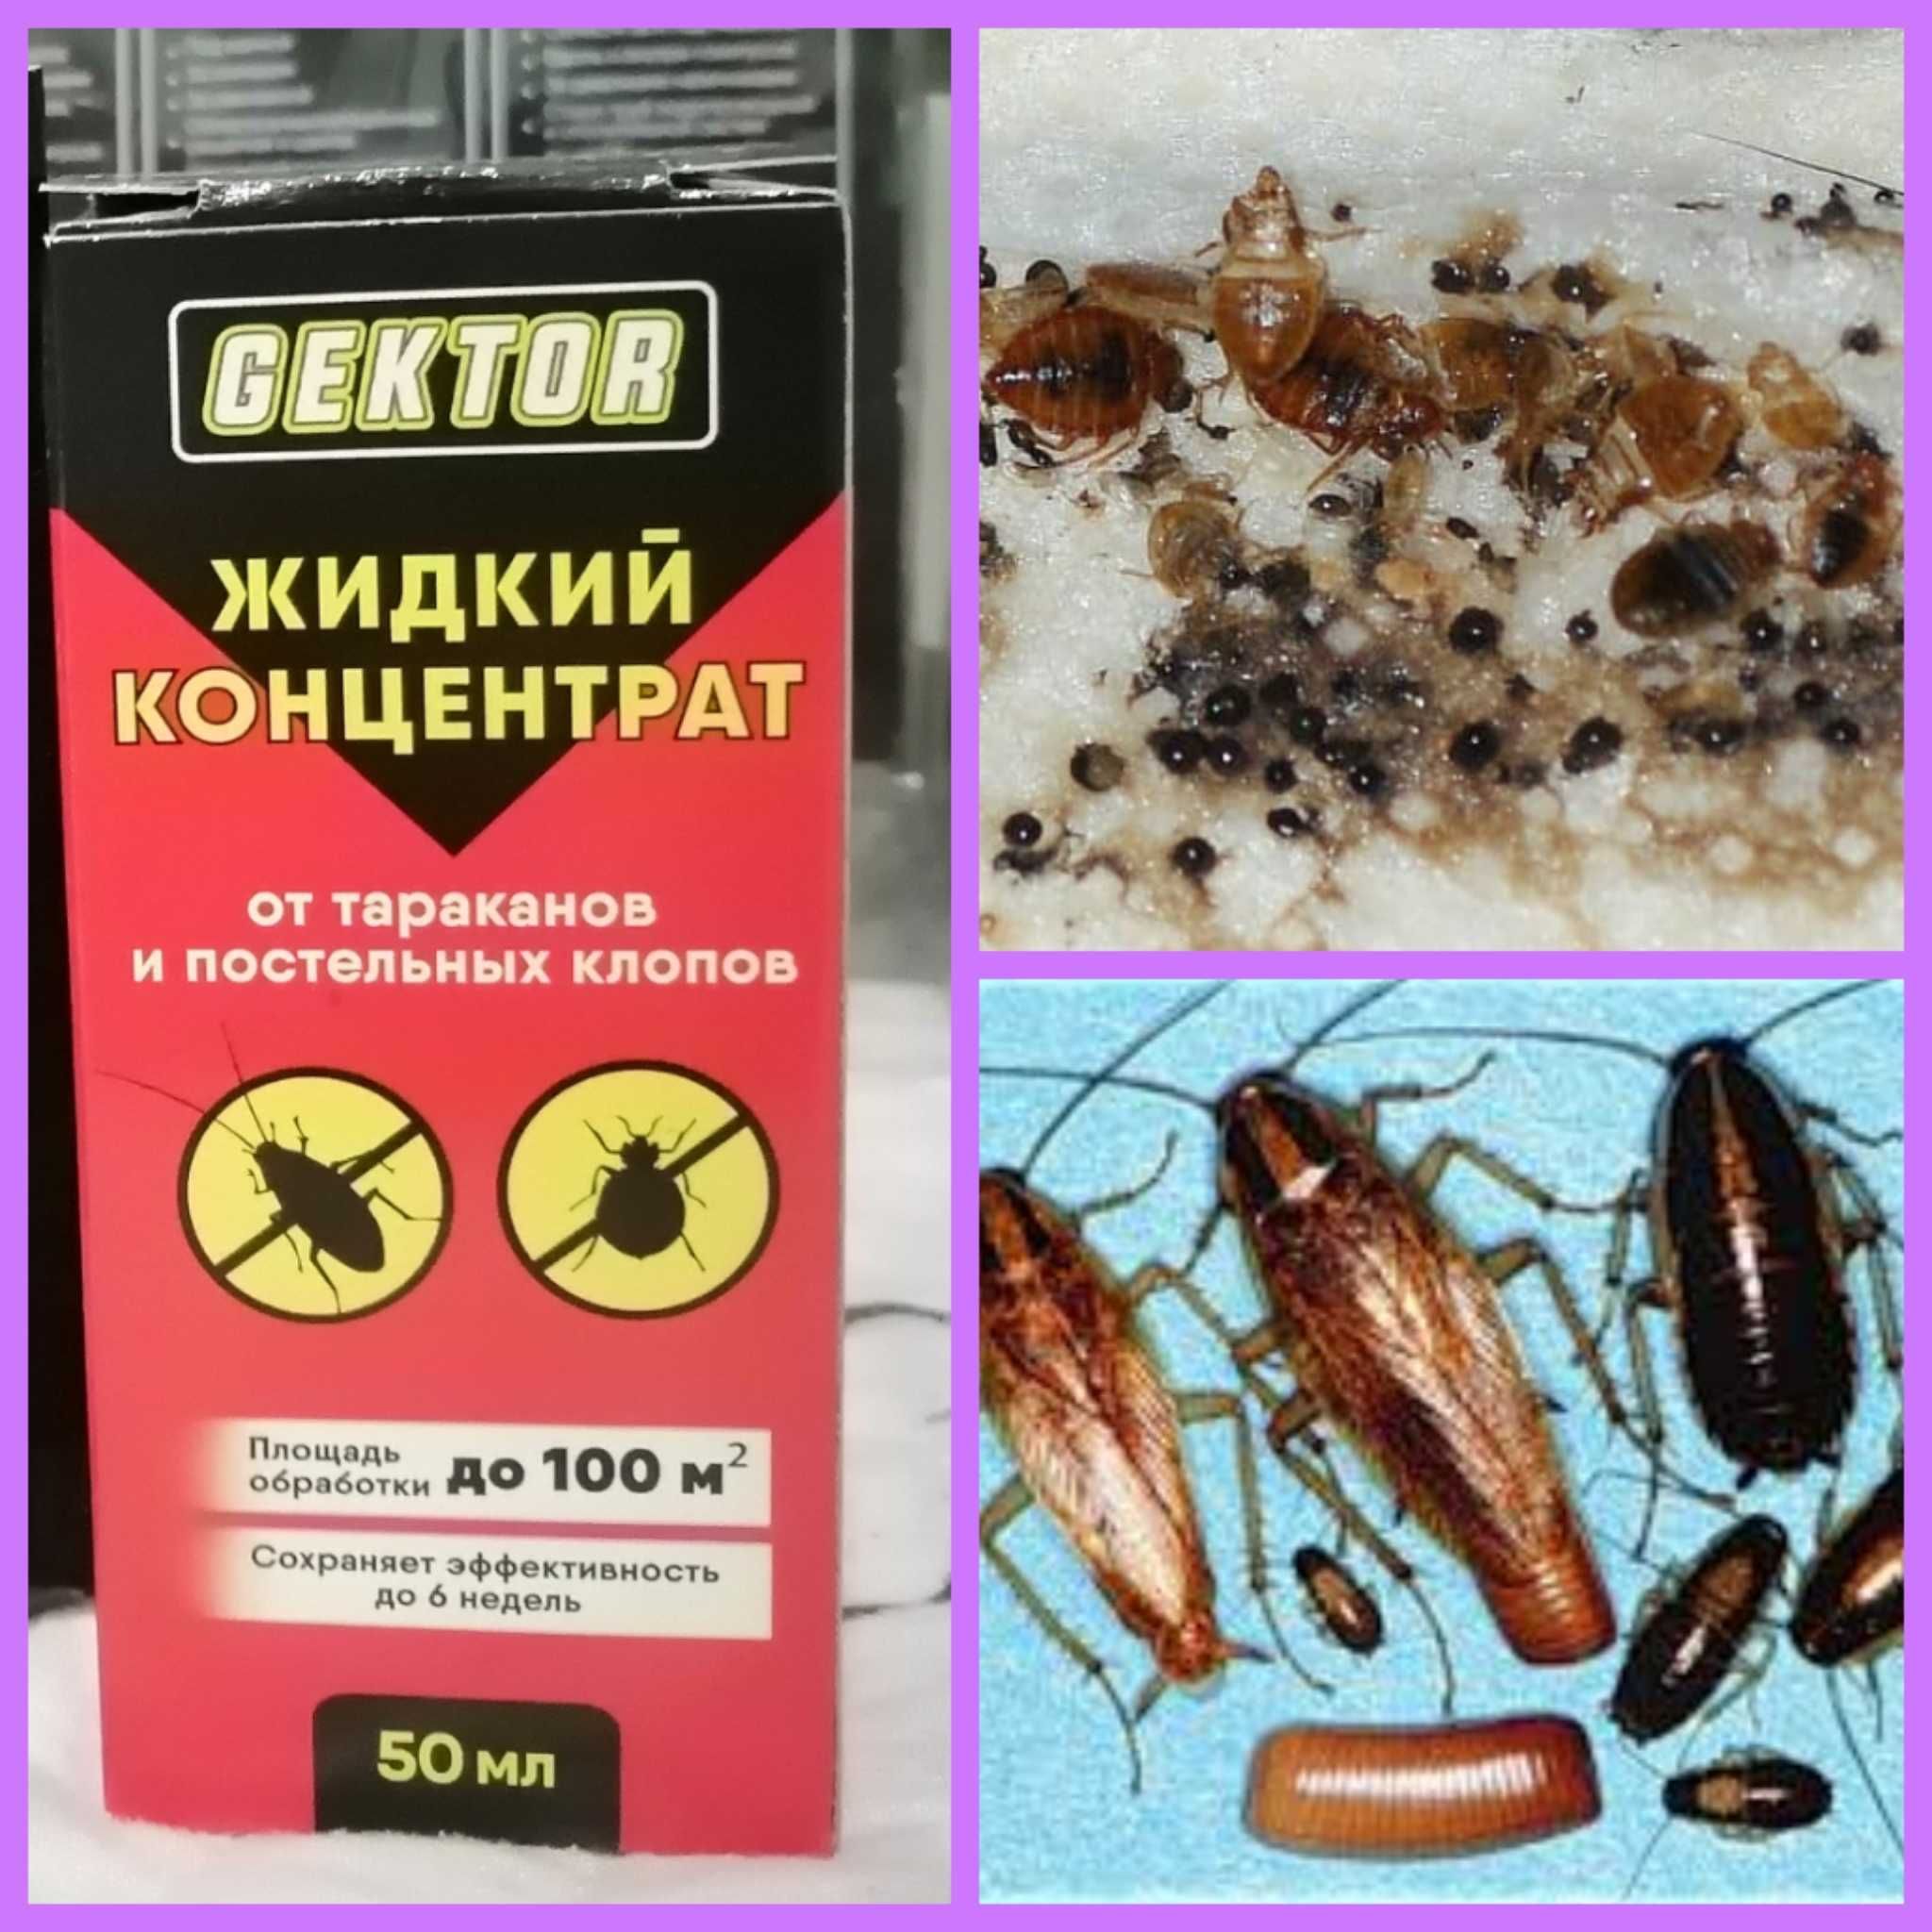 Гектор ( Gektor) от клопов тараканов отрава насекомых Жидкий концетрат